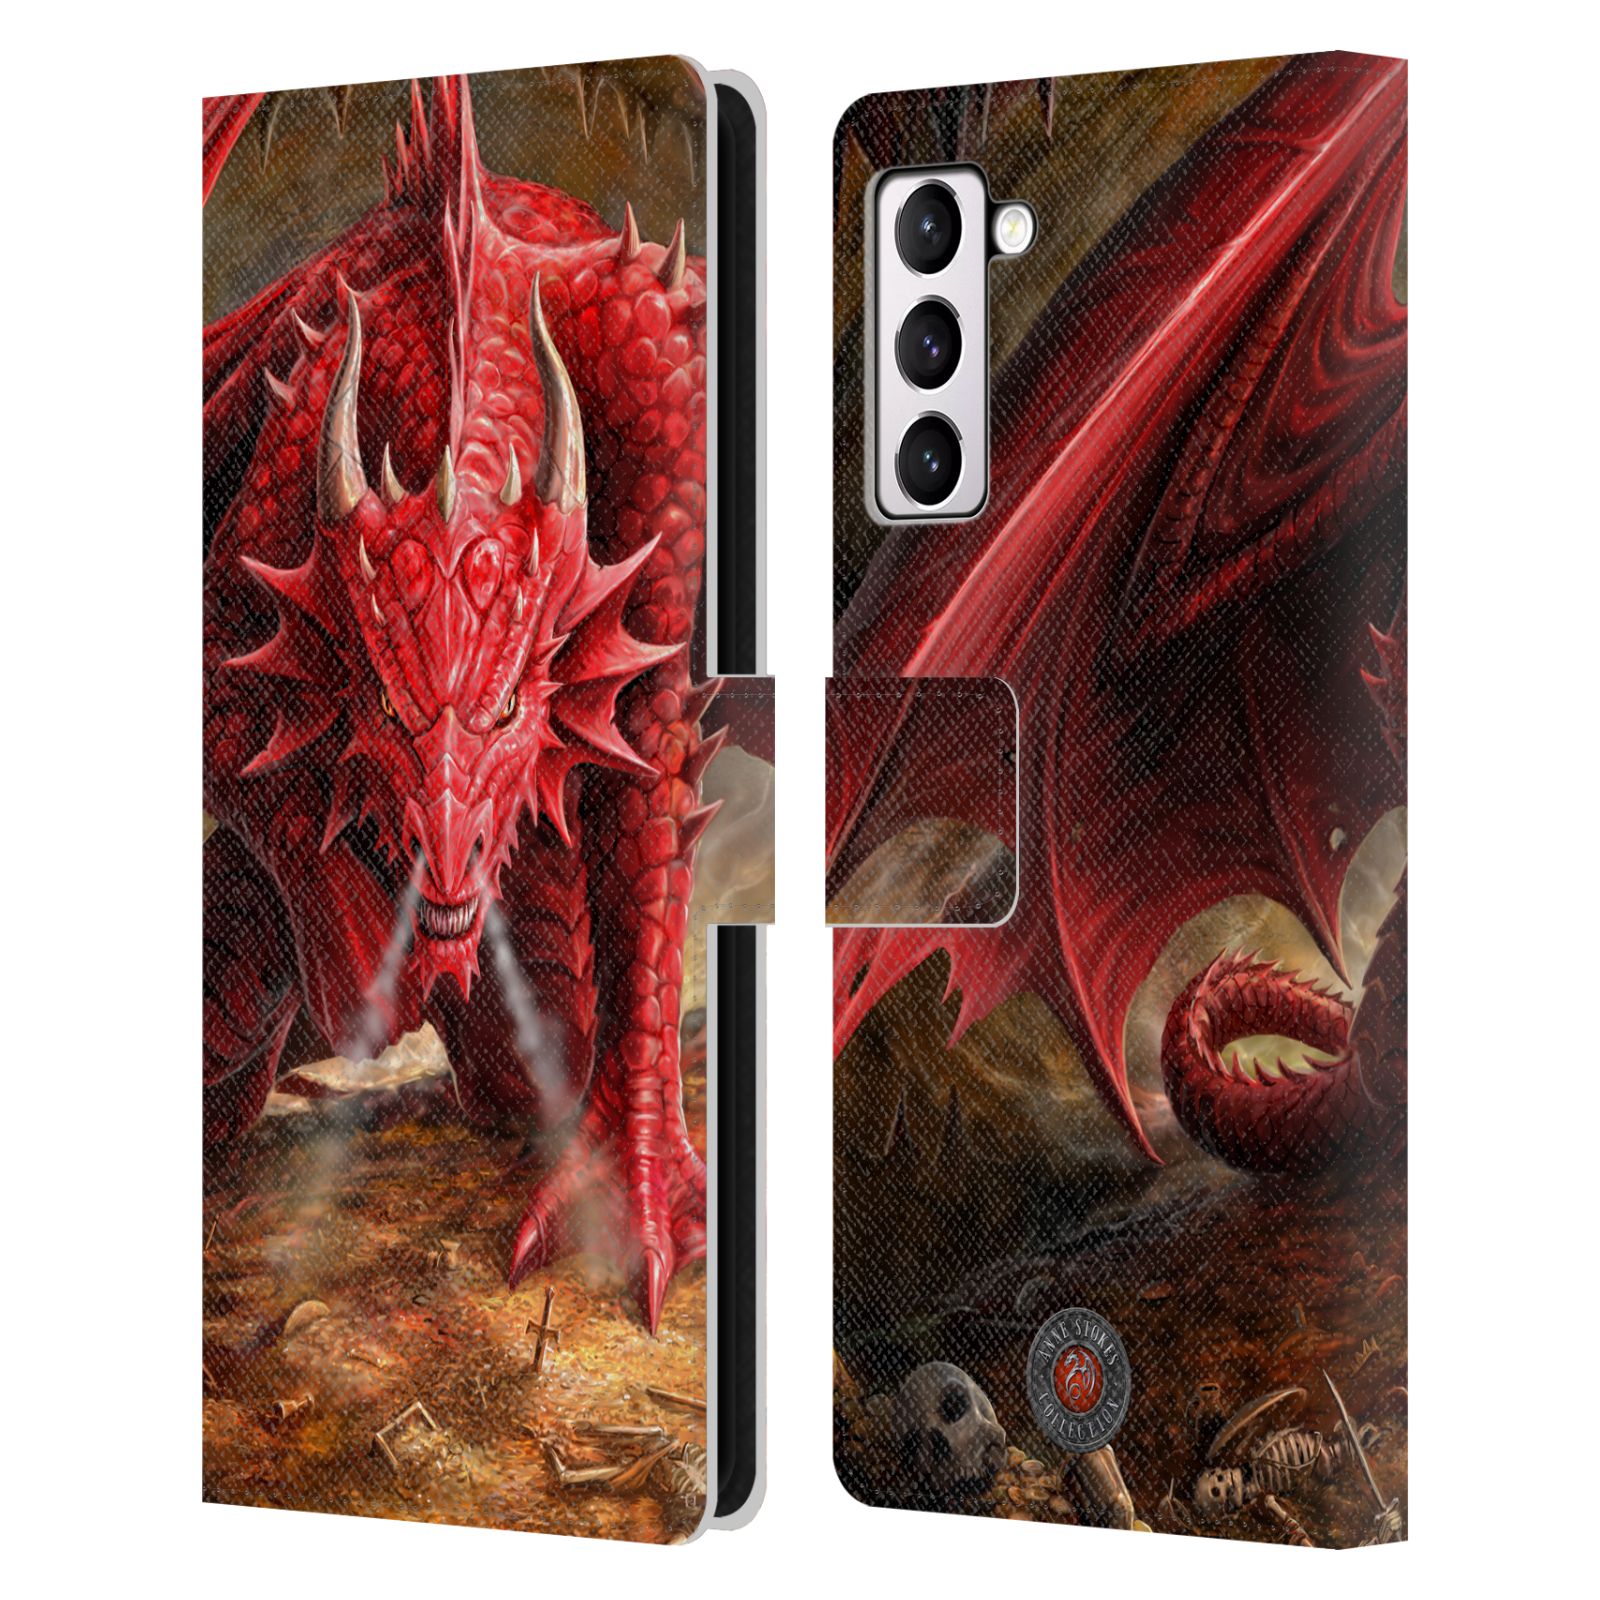 Pouzdro HEAD CASE na mobil Samsung Galaxy S21+ 5G / S21 PLUS 5G  fantasy - červený drak